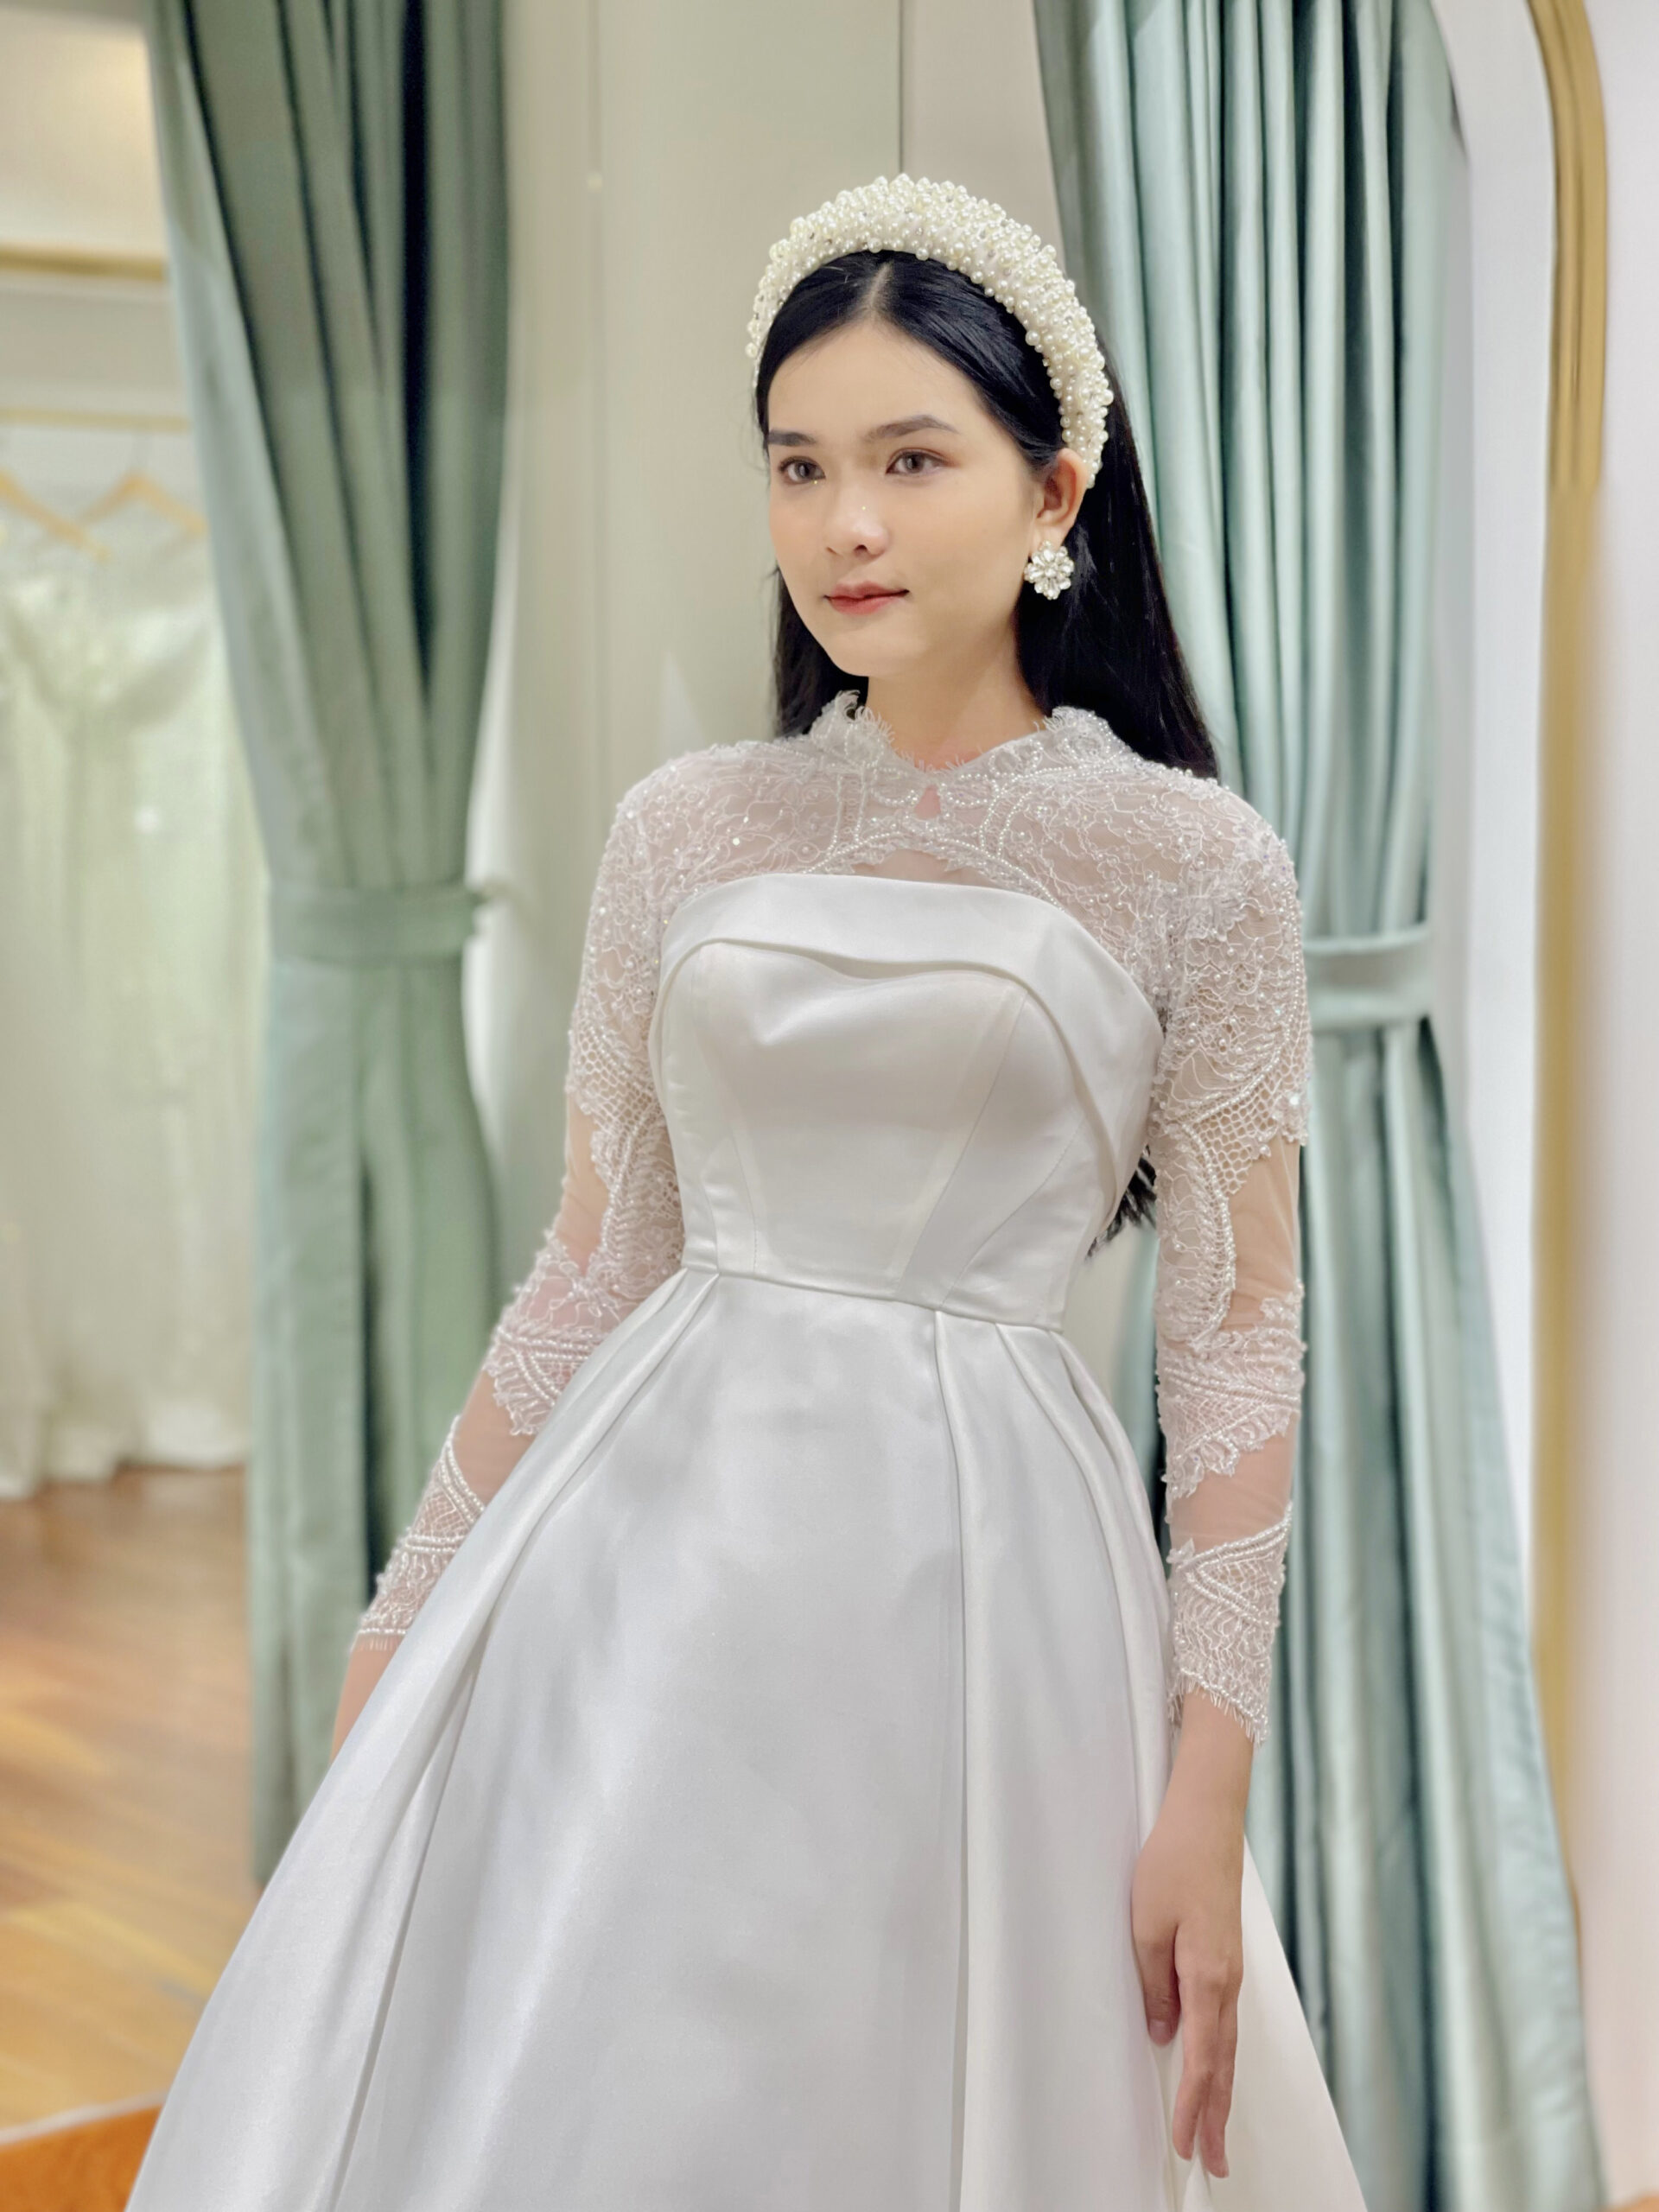 6 mẫu áo dài cưới 2020 ren trắng thanh lịch, quyến rũ | QUYÊN NGUYỄN